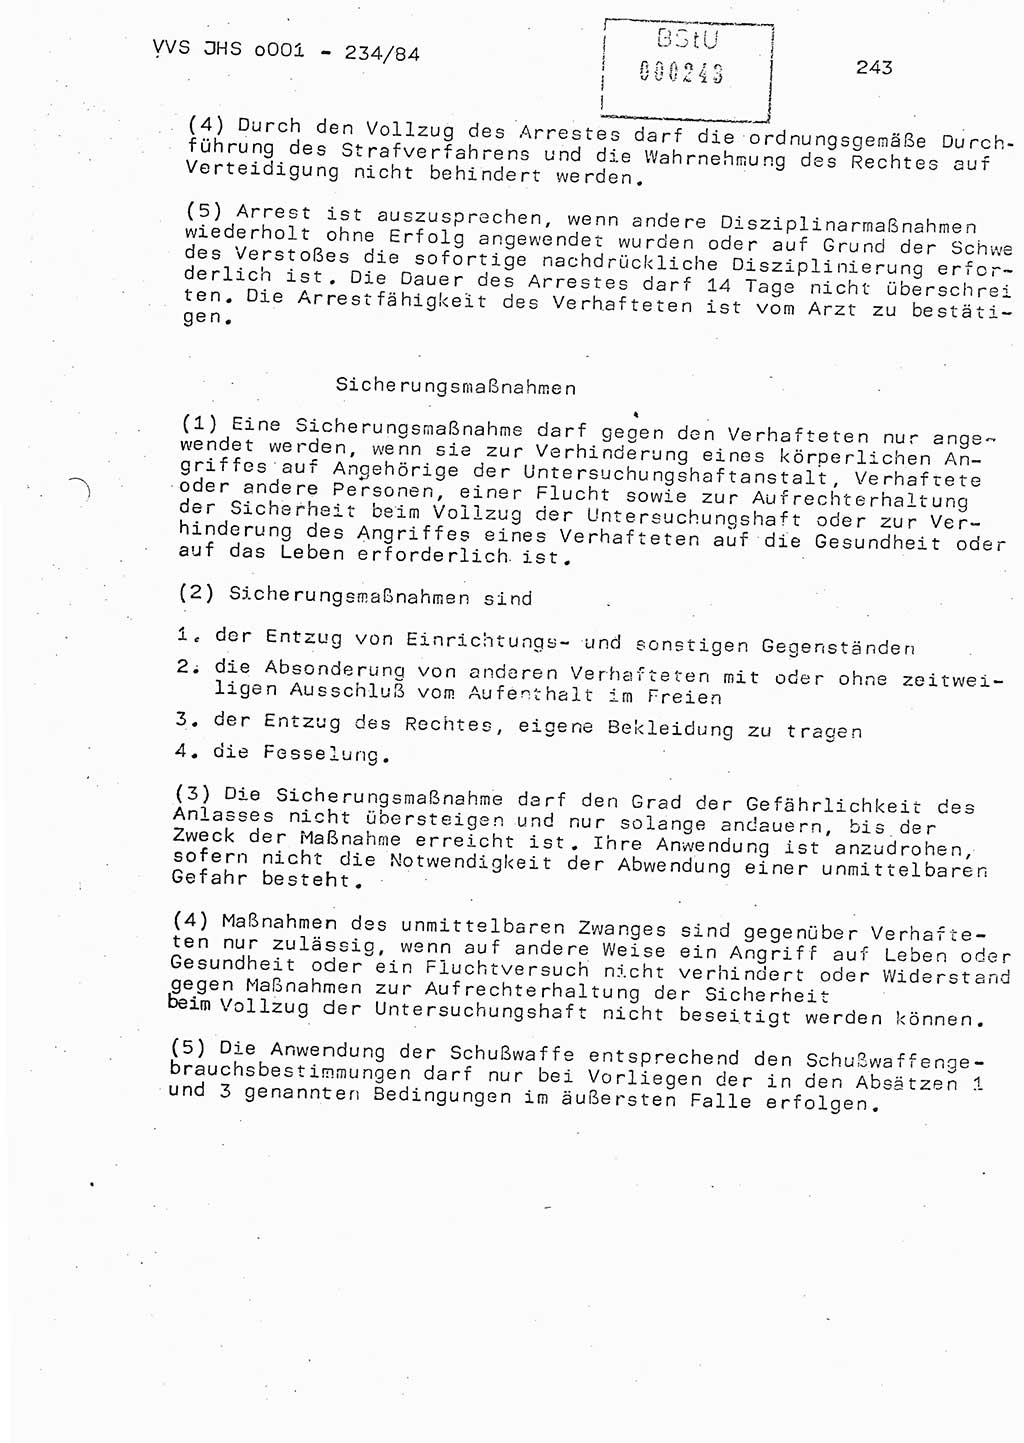 Dissertation Oberst Siegfried Rataizick (Abt. ⅩⅣ), Oberstleutnant Volkmar Heinz (Abt. ⅩⅣ), Oberstleutnant Werner Stein (HA Ⅸ), Hauptmann Heinz Conrad (JHS), Ministerium für Staatssicherheit (MfS) [Deutsche Demokratische Republik (DDR)], Juristische Hochschule (JHS), Vertrauliche Verschlußsache (VVS) o001-234/84, Potsdam 1984, Seite 243 (Diss. MfS DDR JHS VVS o001-234/84 1984, S. 243)